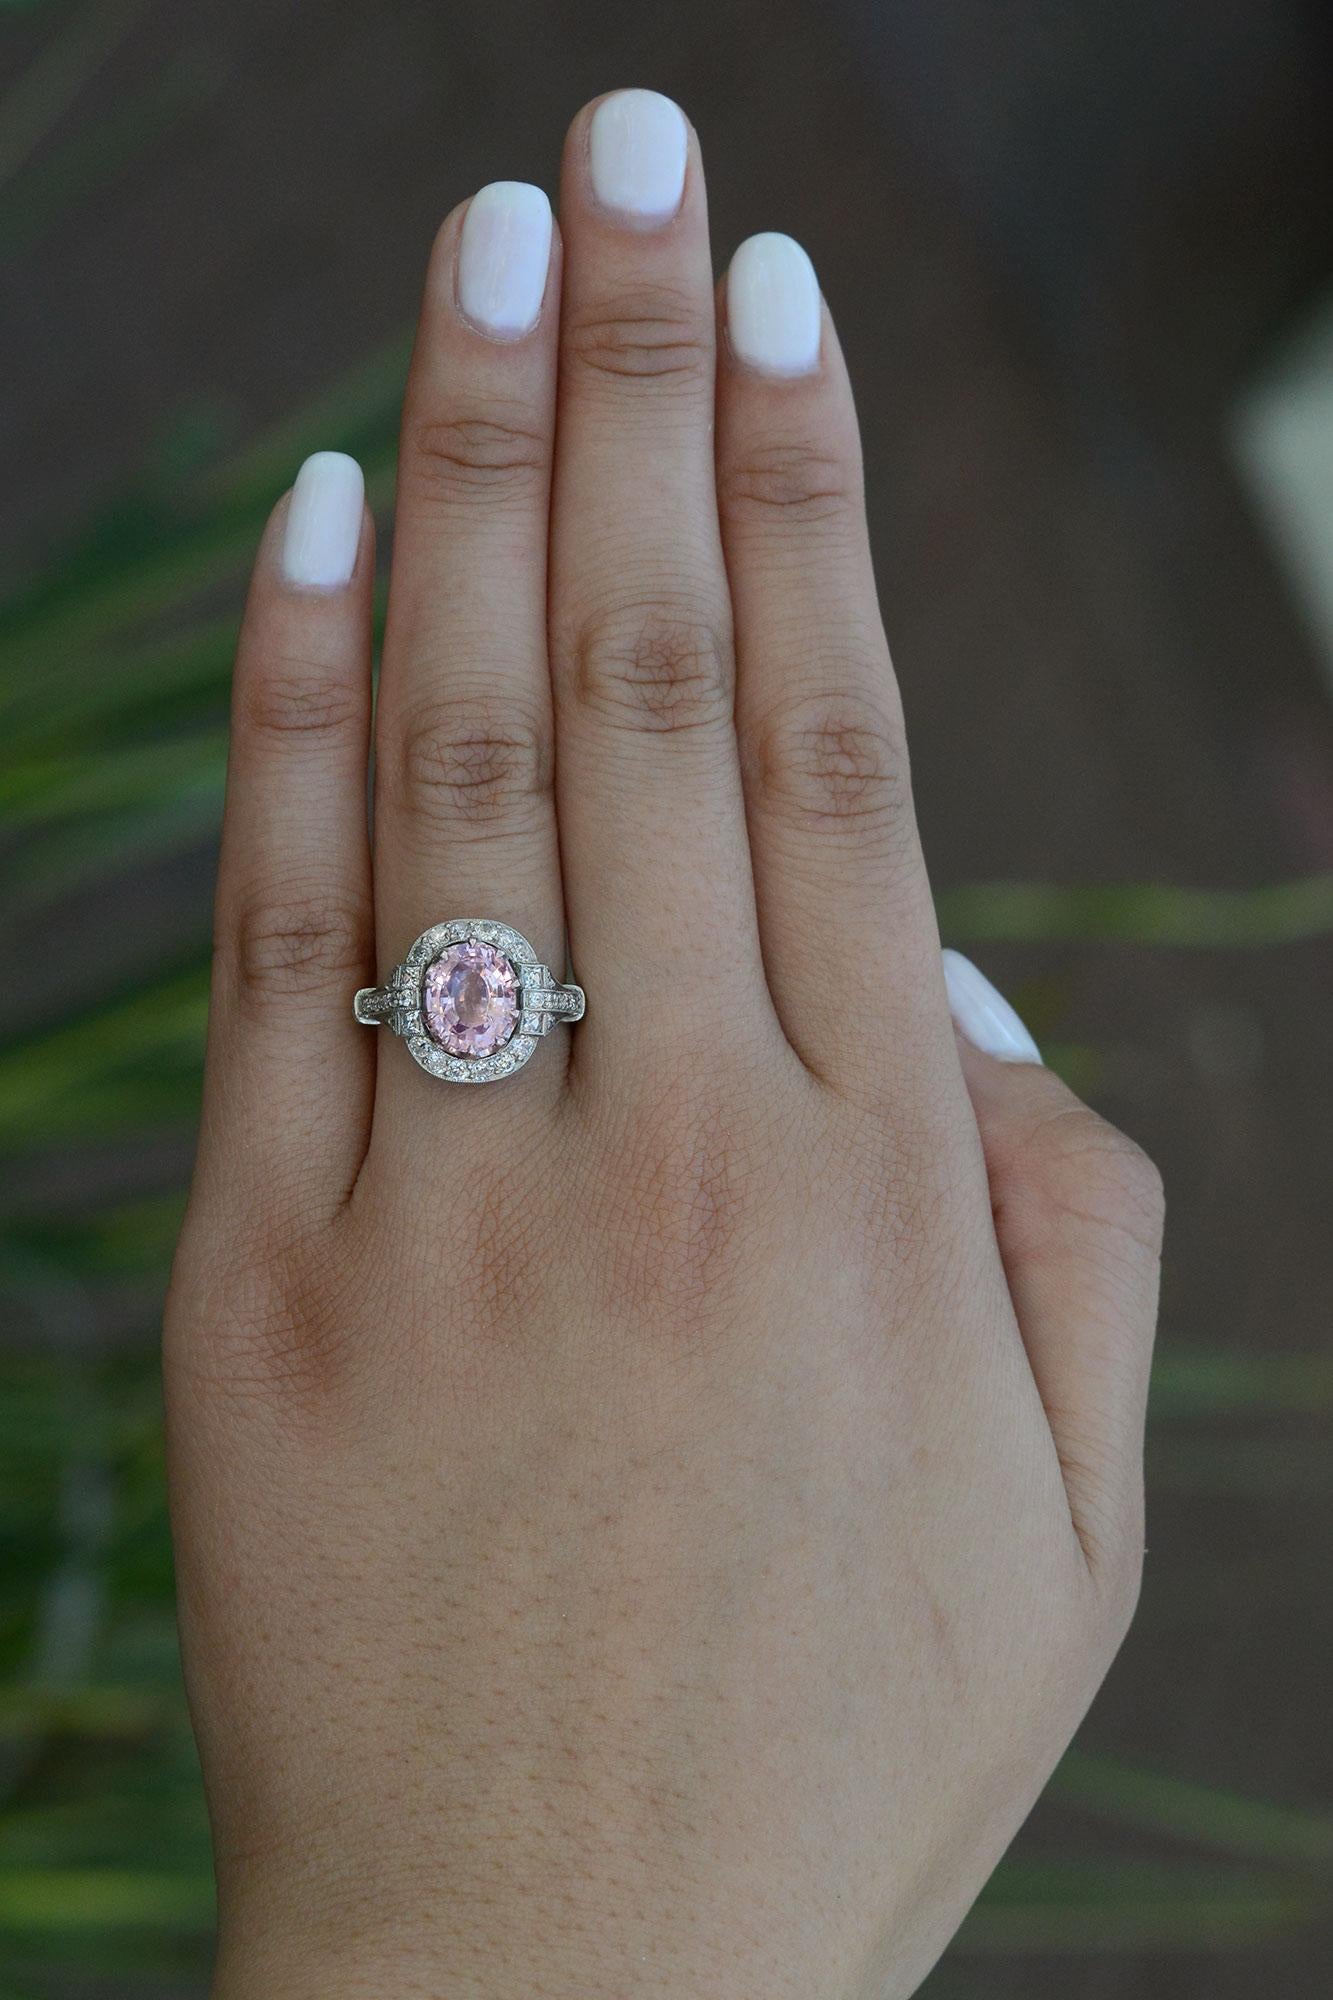 Un saphir Padparadscha brillant et blush est le point fort de cette magnifique bague de fiançailles détaillée.  D'une couleur rose orangée lustrée et précieuse, ce saphir de Ceylan, le plus prisé, tire son nom du cingalais, qui signifie 